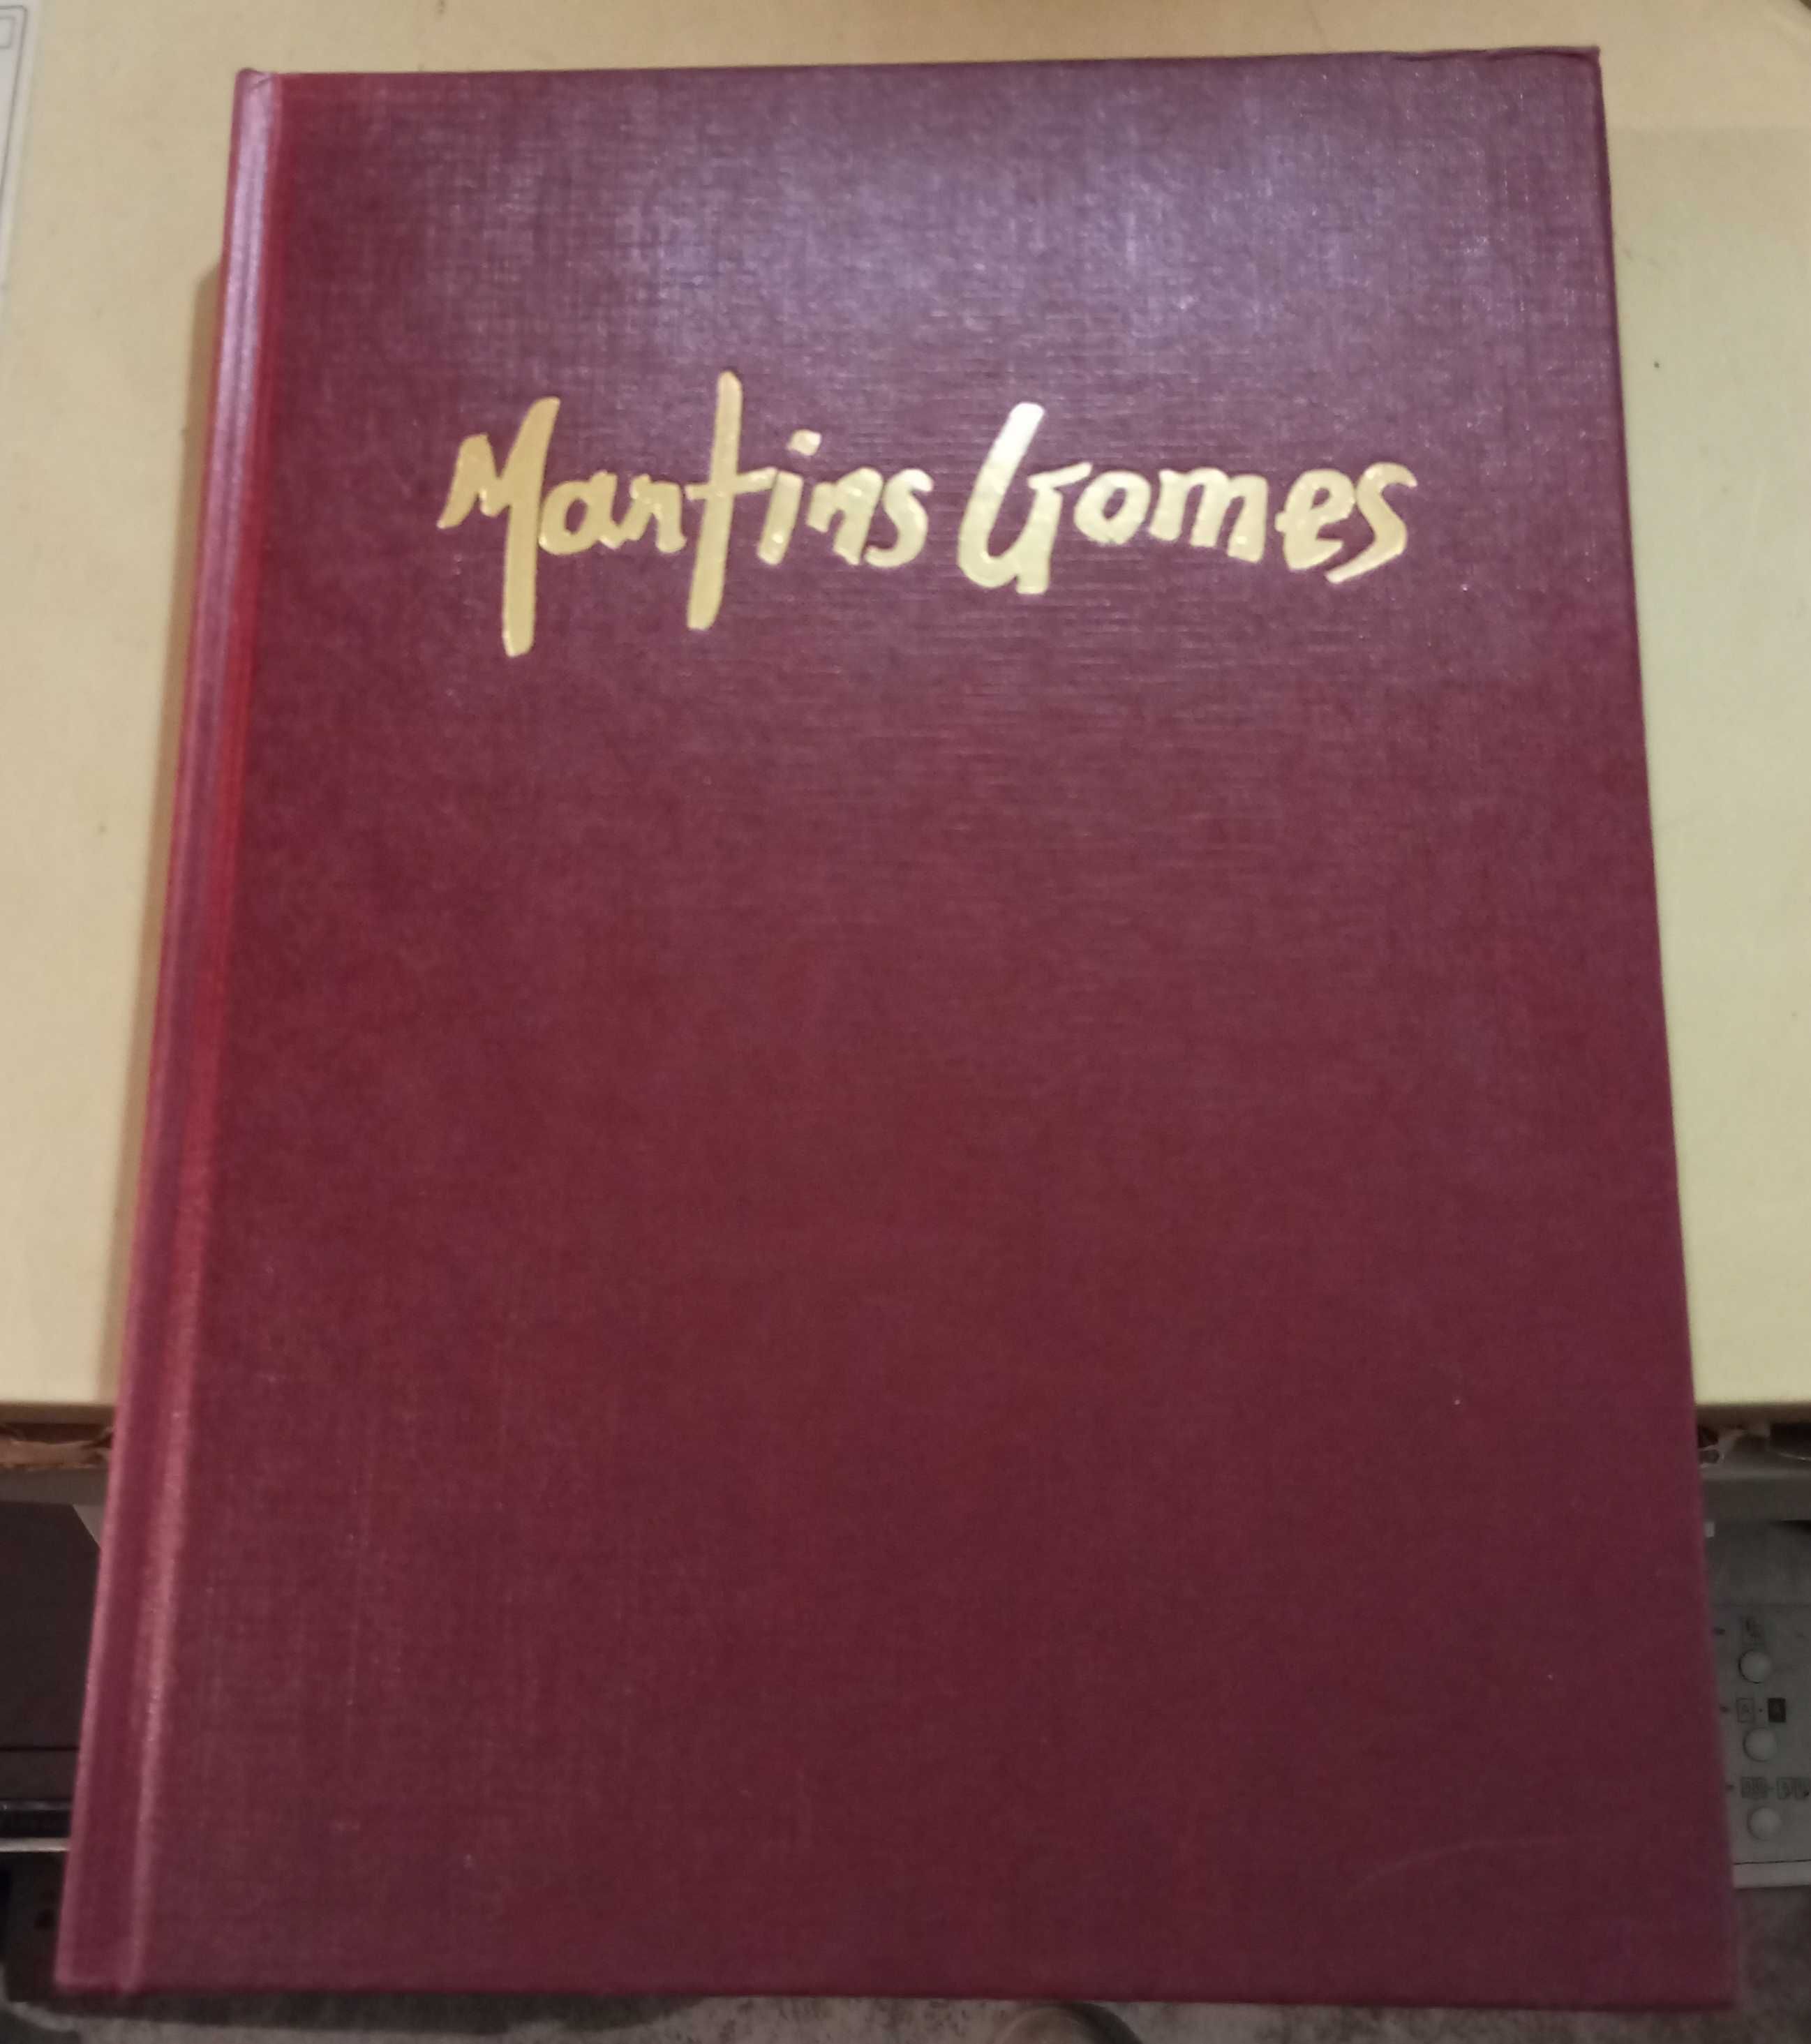 Livro Martins Gomes, o artista e a obra